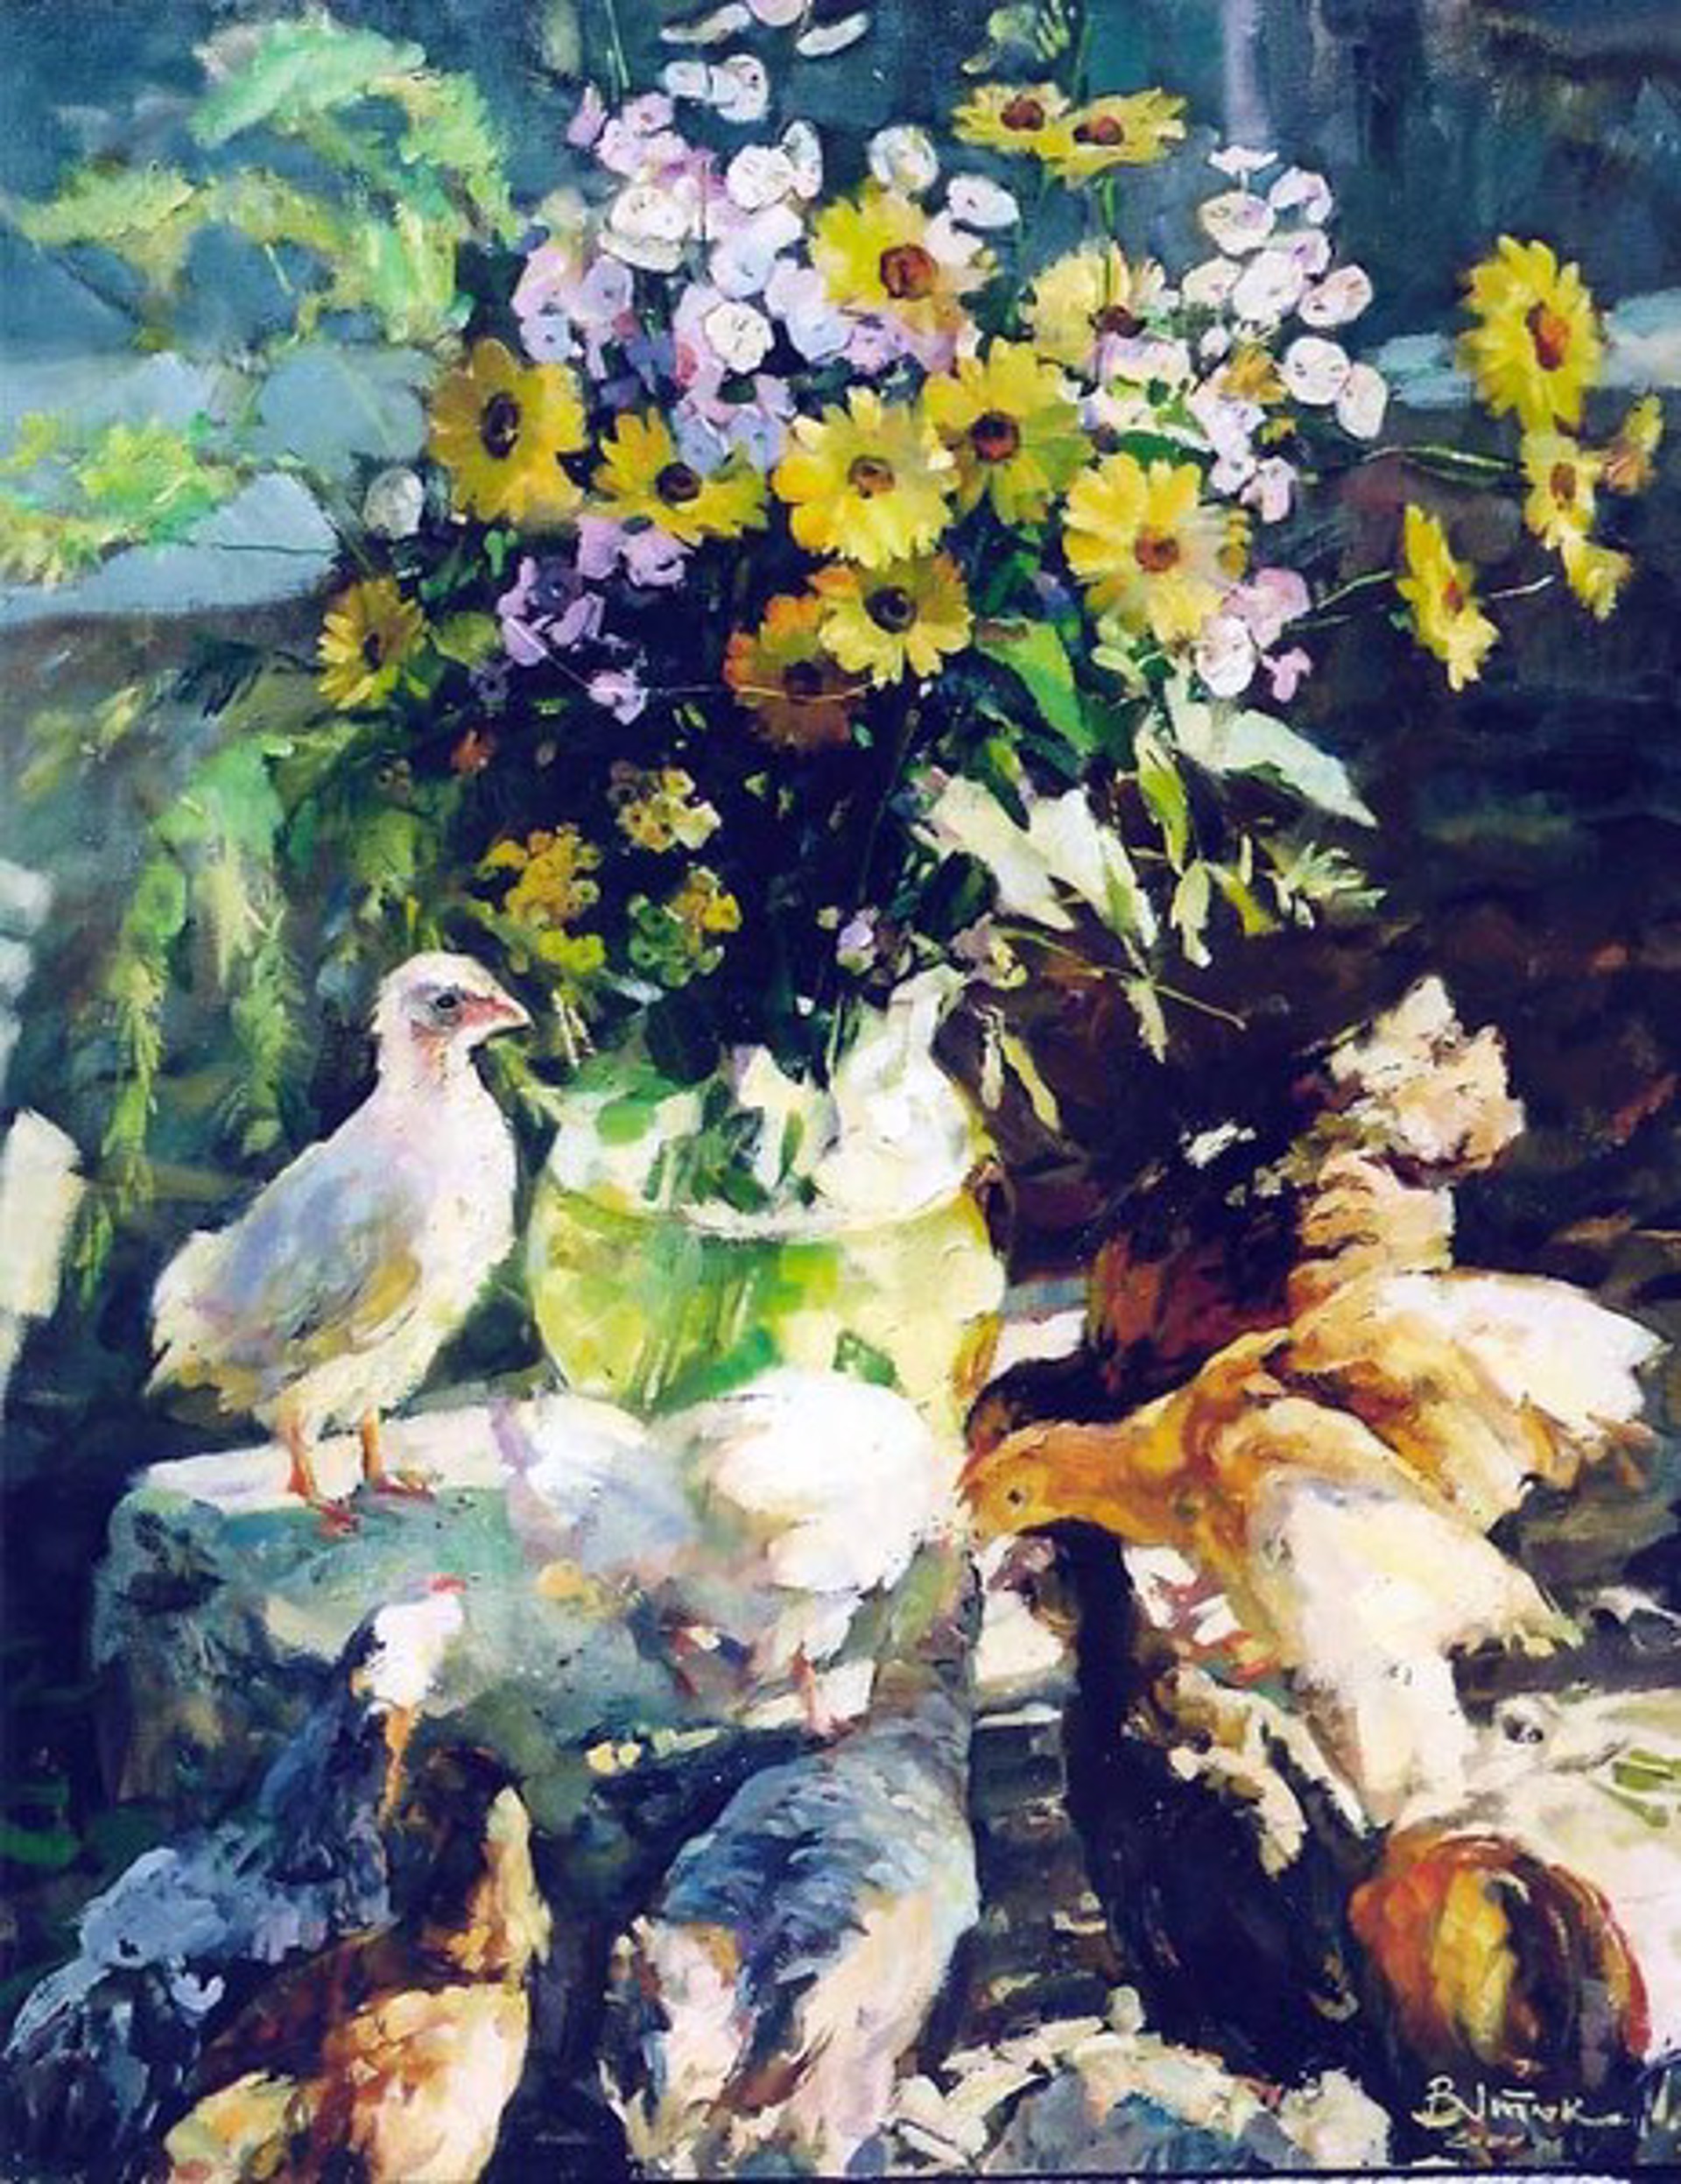 Chicks and Flowers by Ivan Vityuk